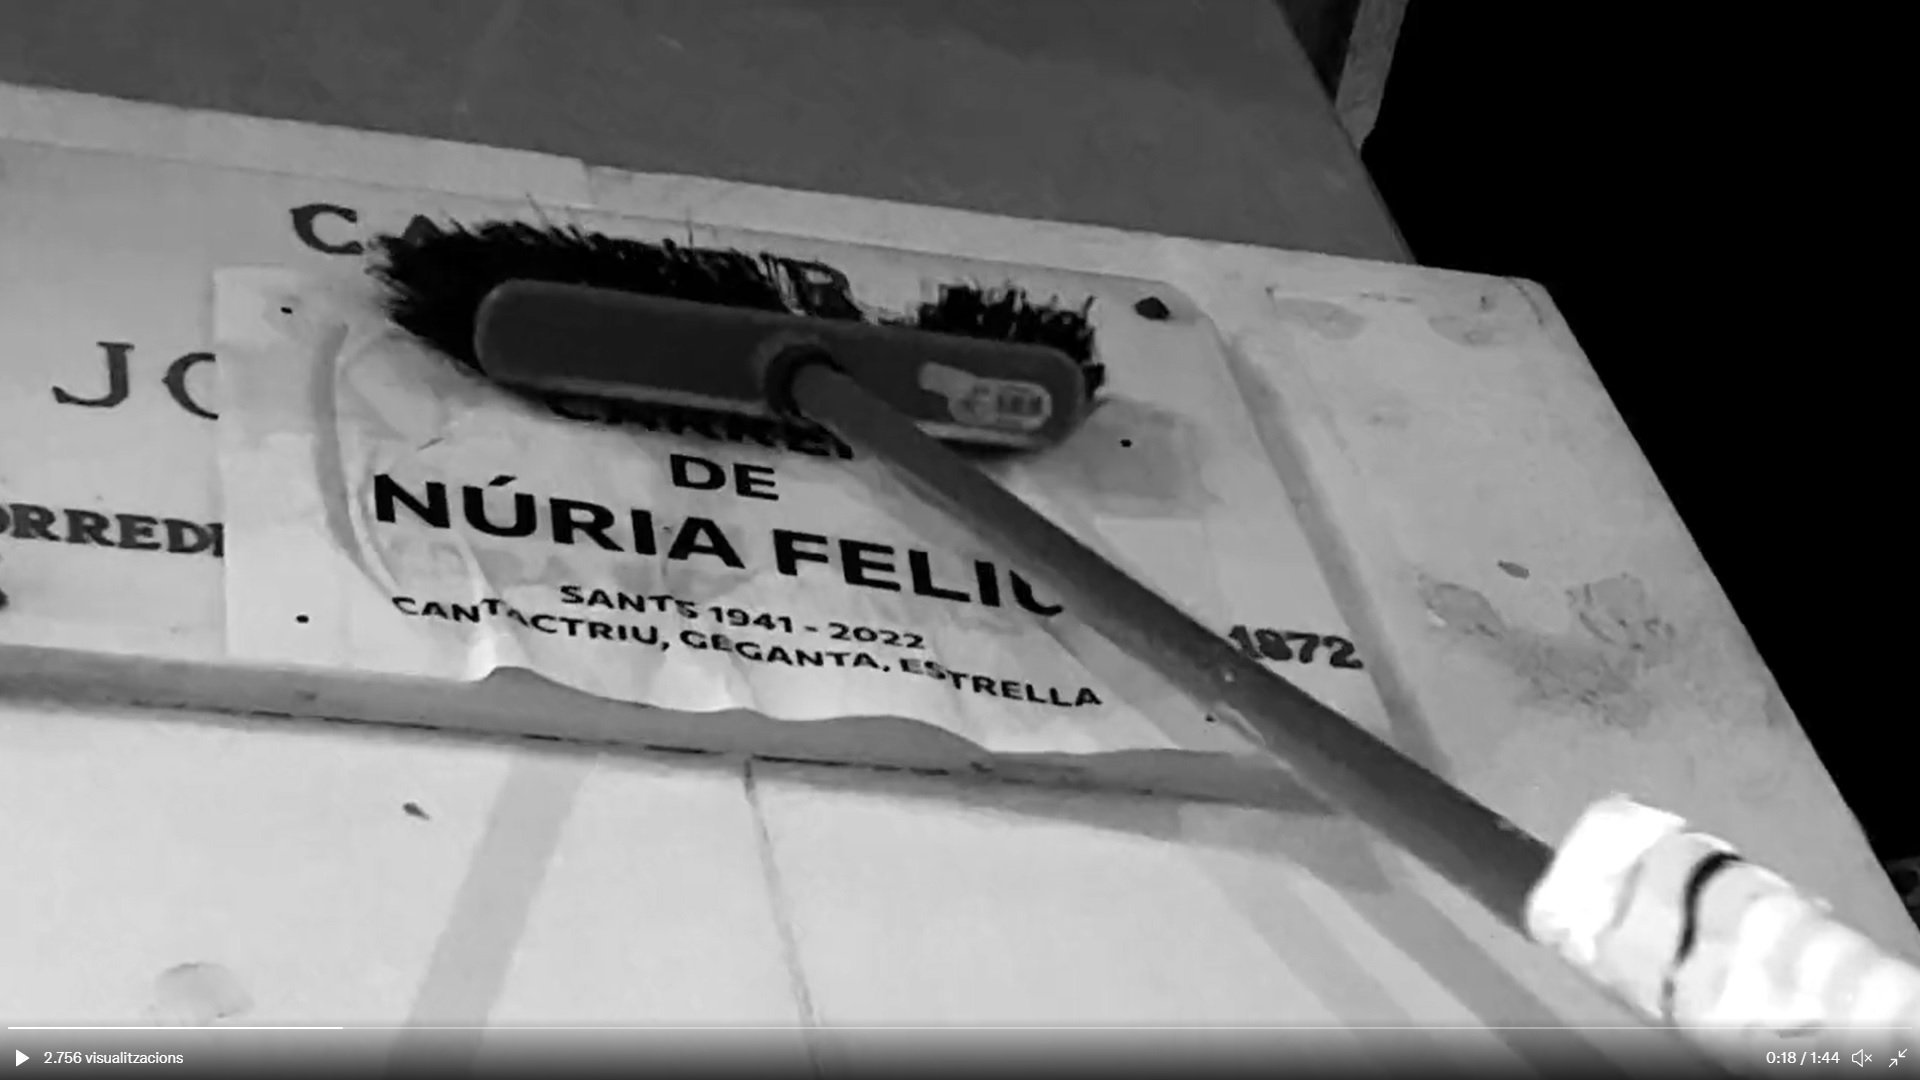 Cambian el nombre de una calle en Sants por el de Núria Feliu